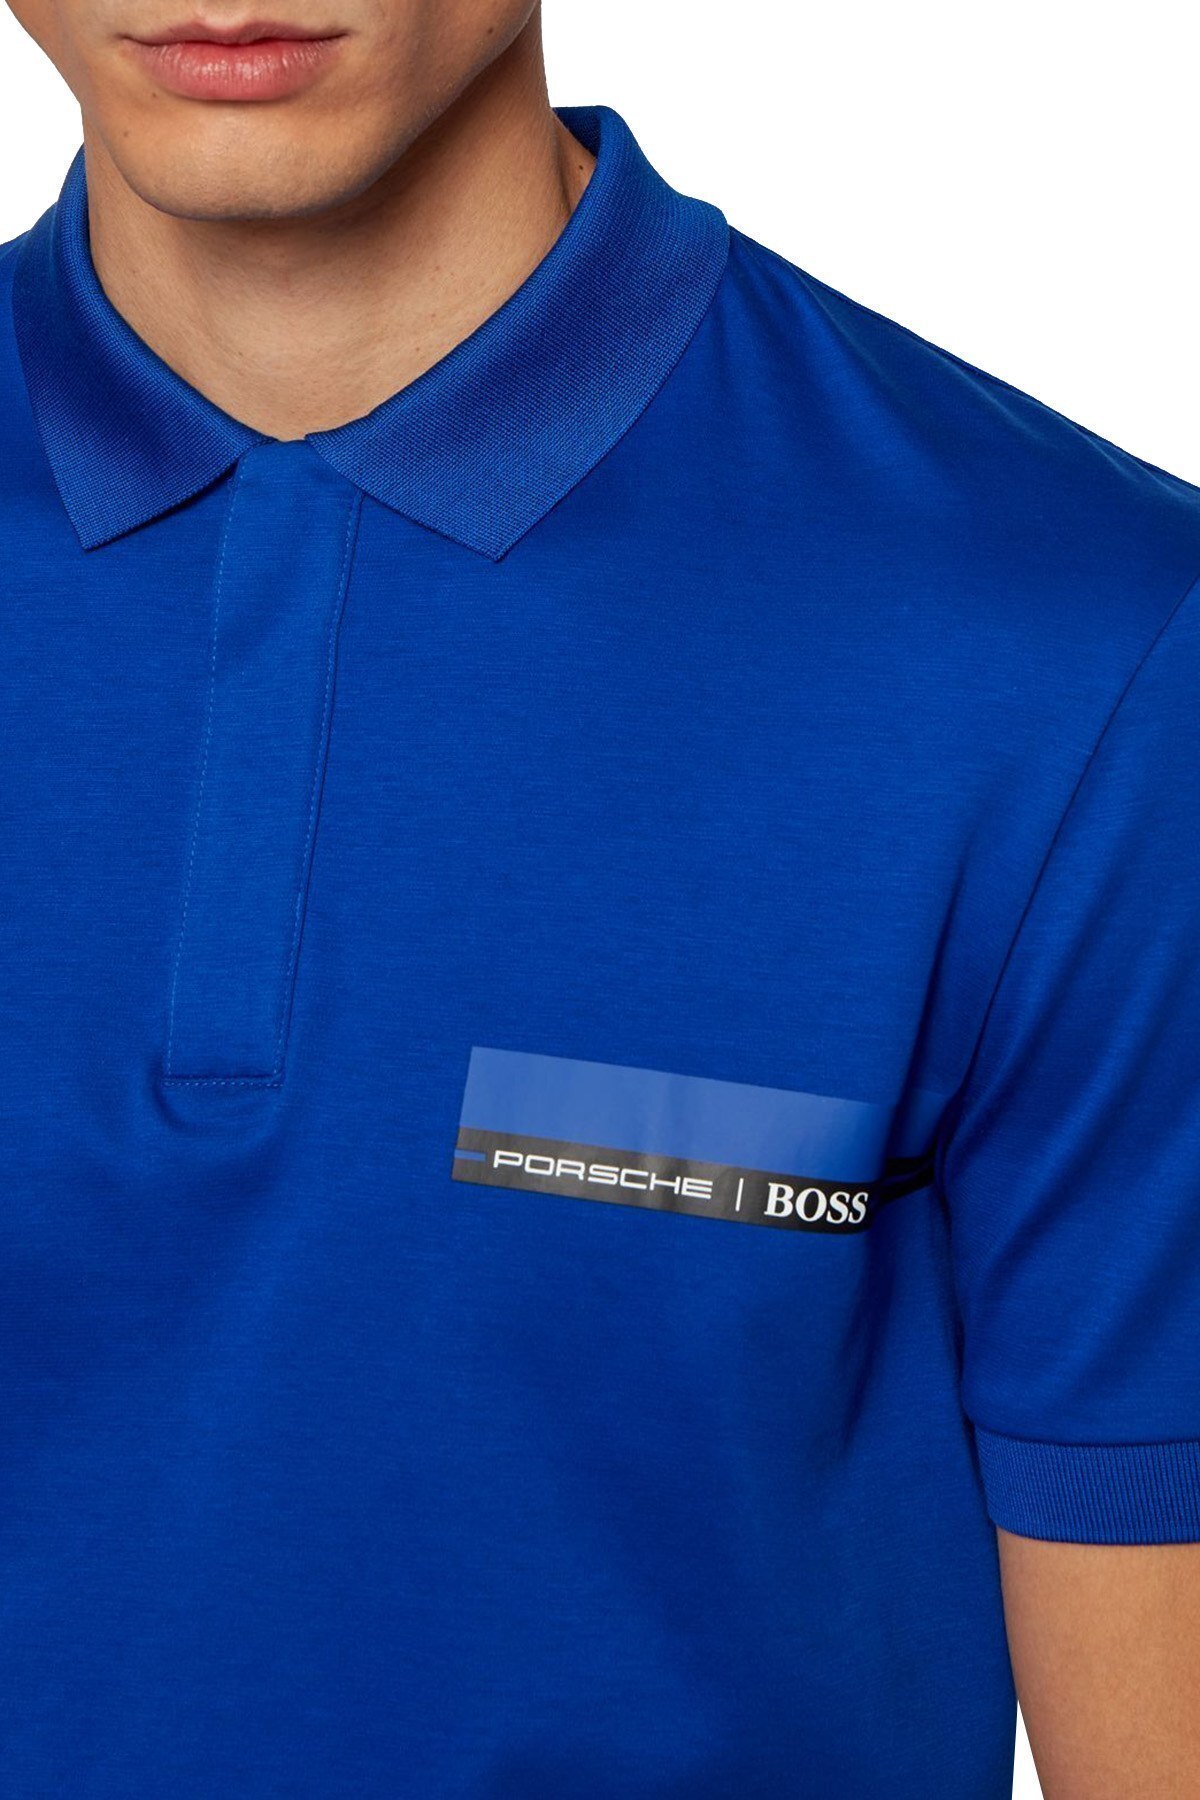 Hugo Boss % 100 Pamuklu Slim Fit T Shirt Erkek Polo 50449394 463 SAKS